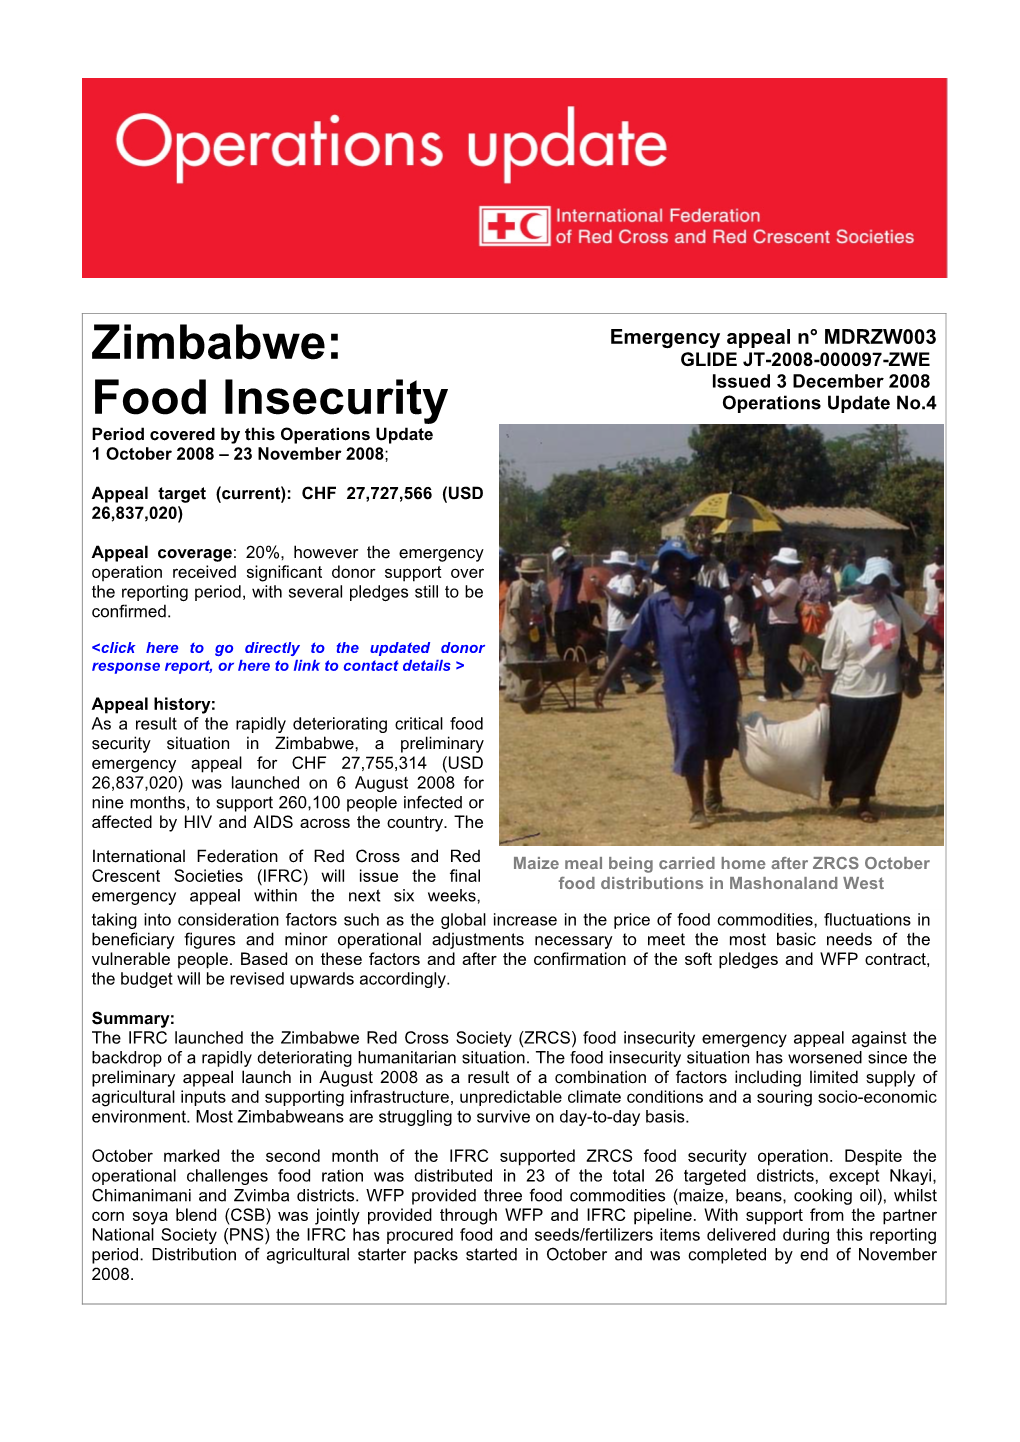 Zimbabwe: Food Insecurity